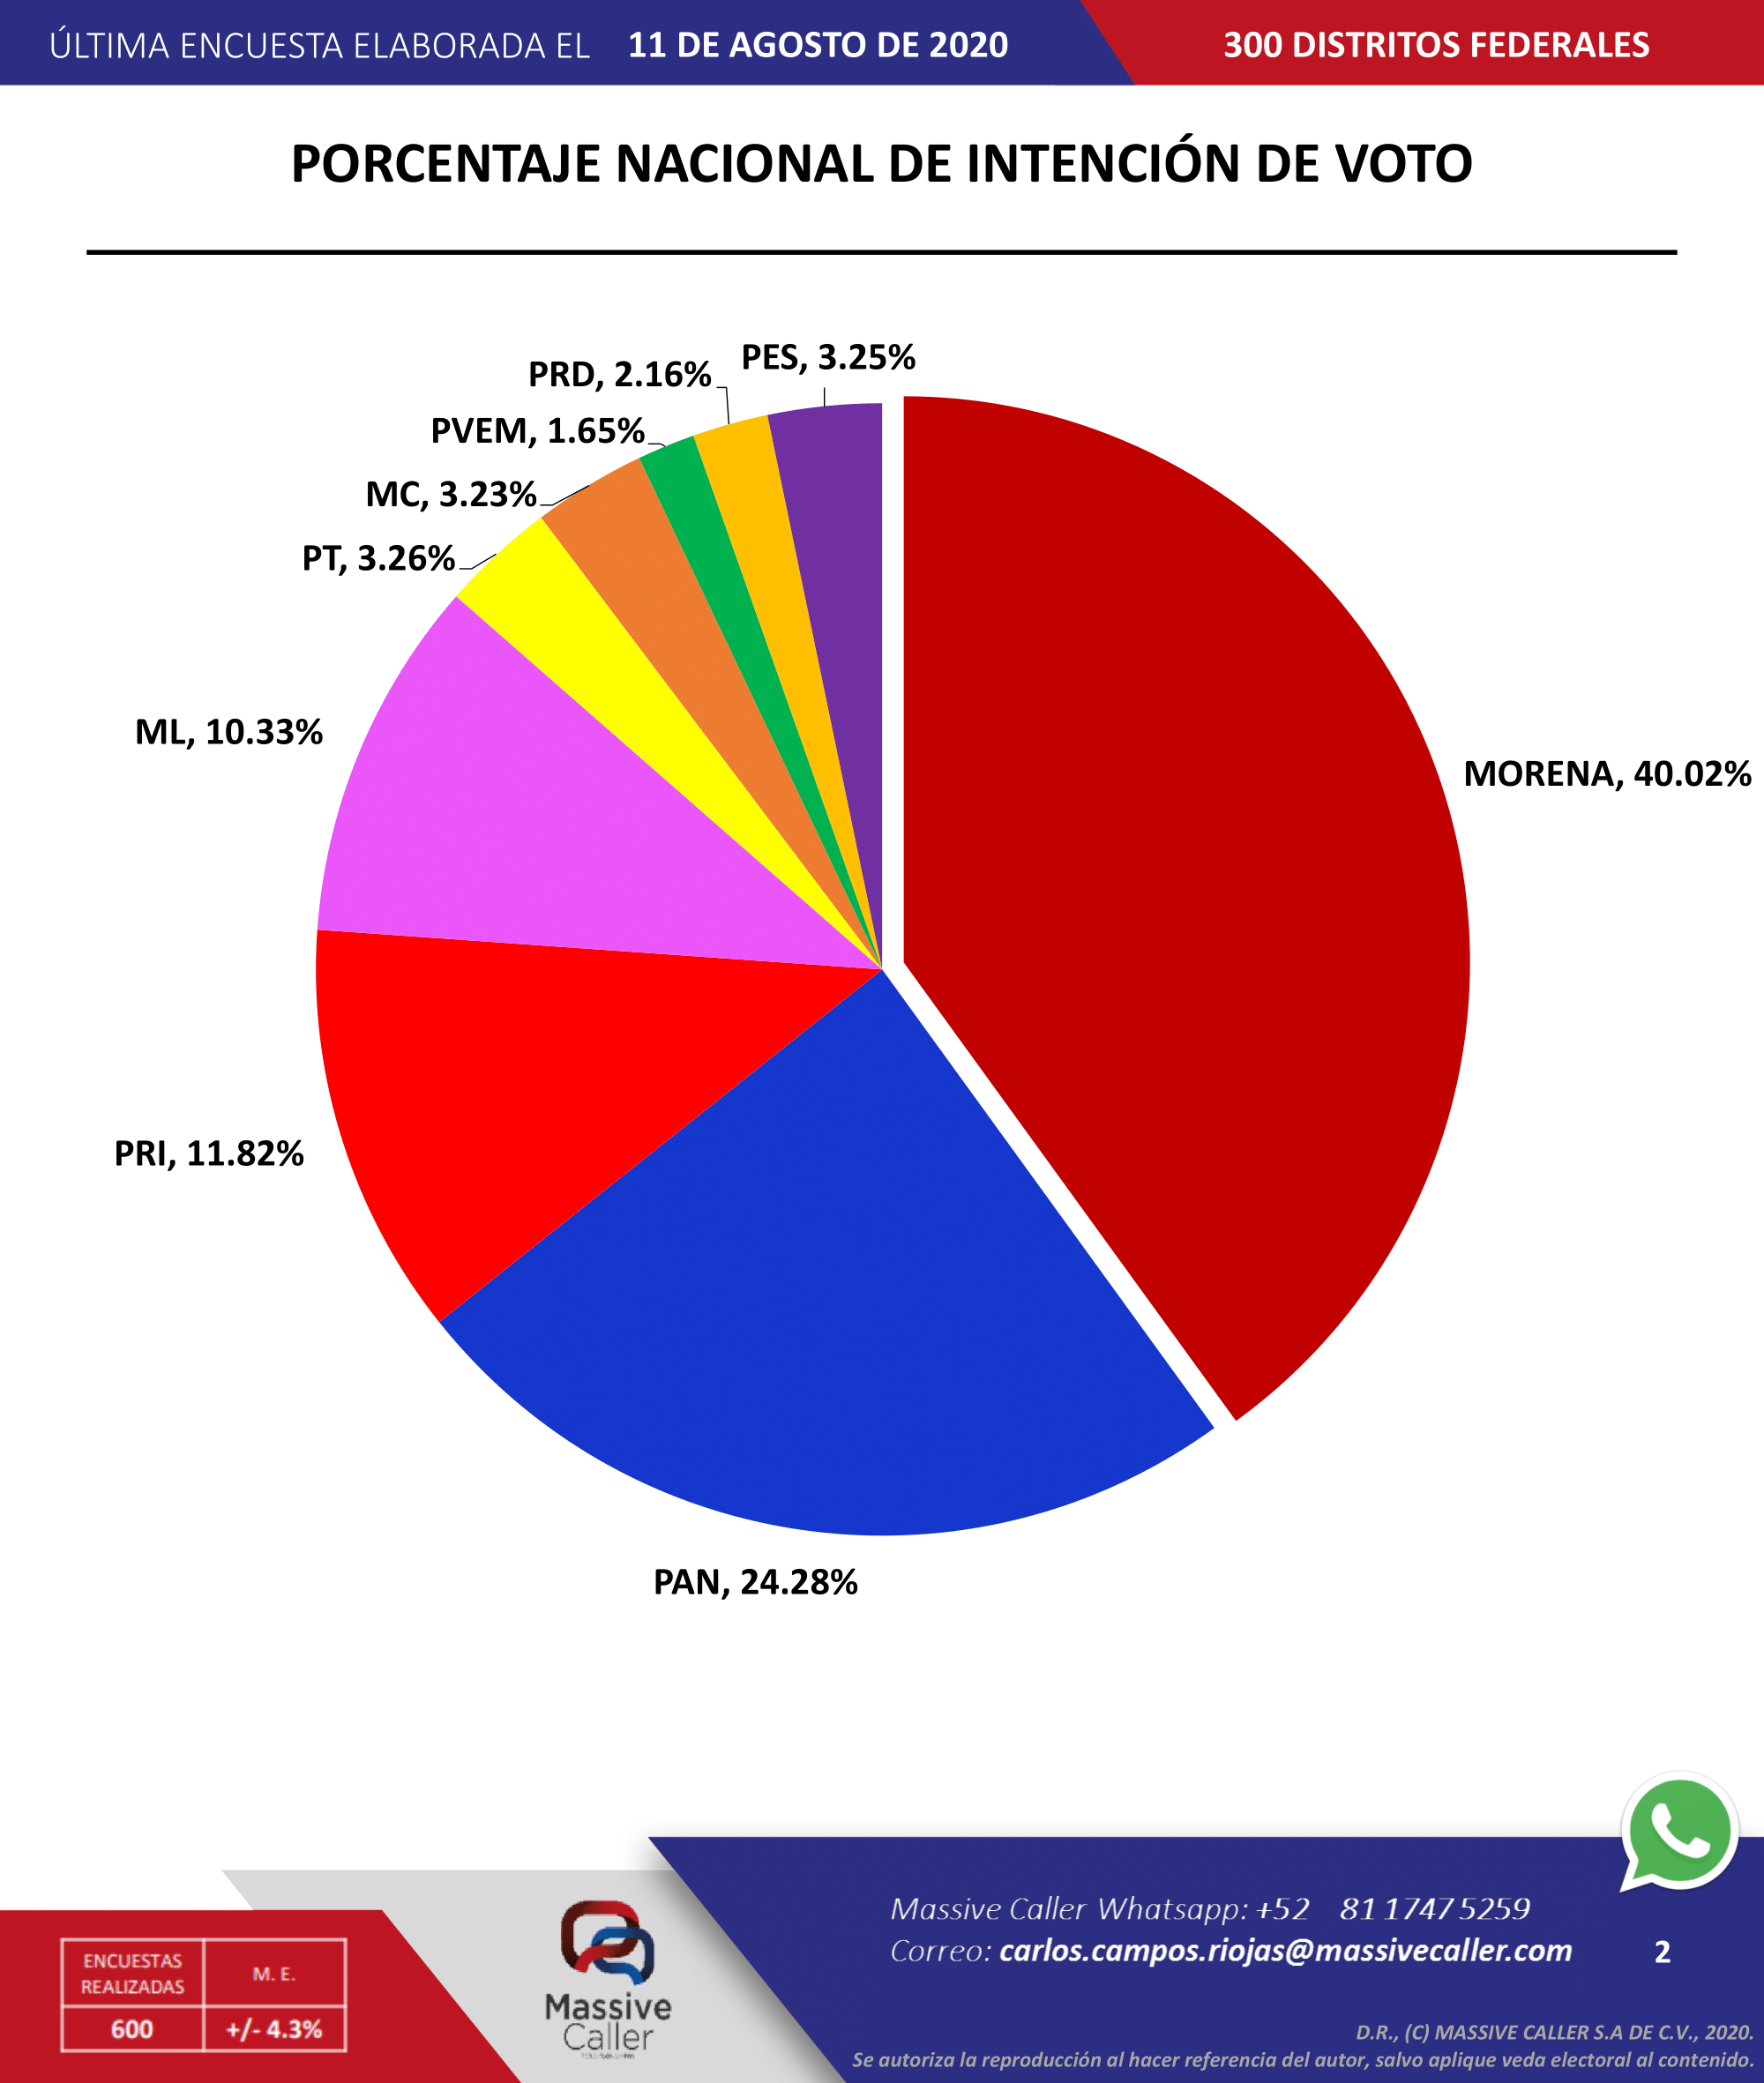 Pronostican una mayoría del partido Movimiento Regeneración Nacional (Morena) con el 40.2% de la intención de voto, seguido por el Partido Acción Nacional (PAN) con un 24.28% y en tercer lugar el Partido Revolucionario Institucional (PRI) con el 11.82%.